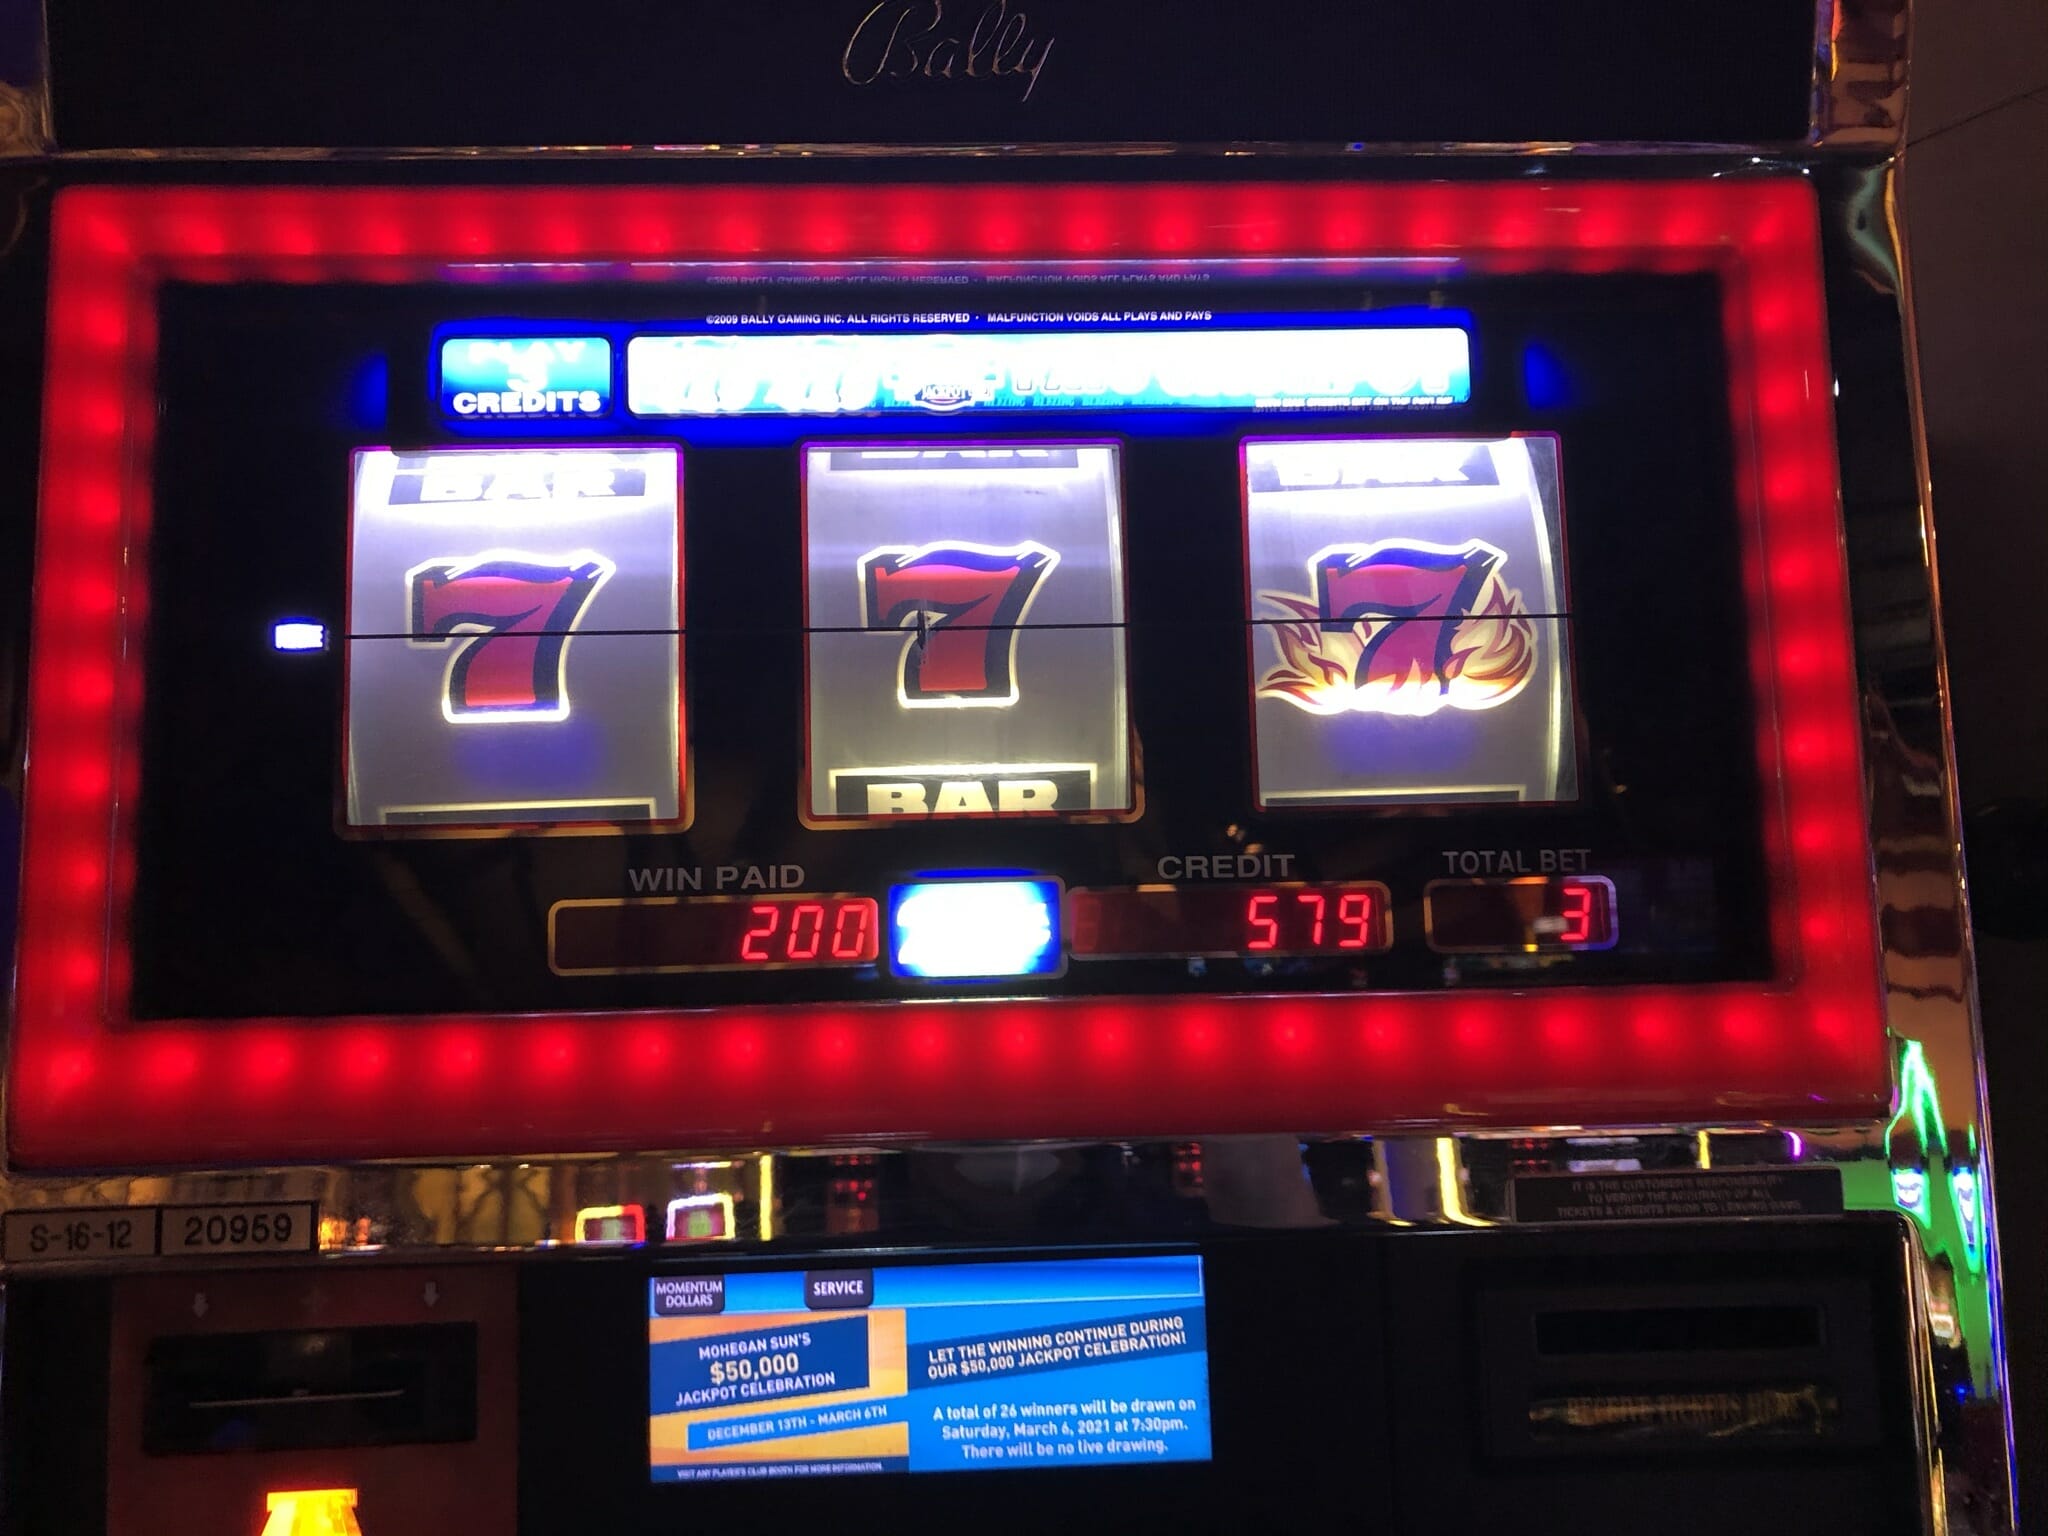 777 blazing slot machine